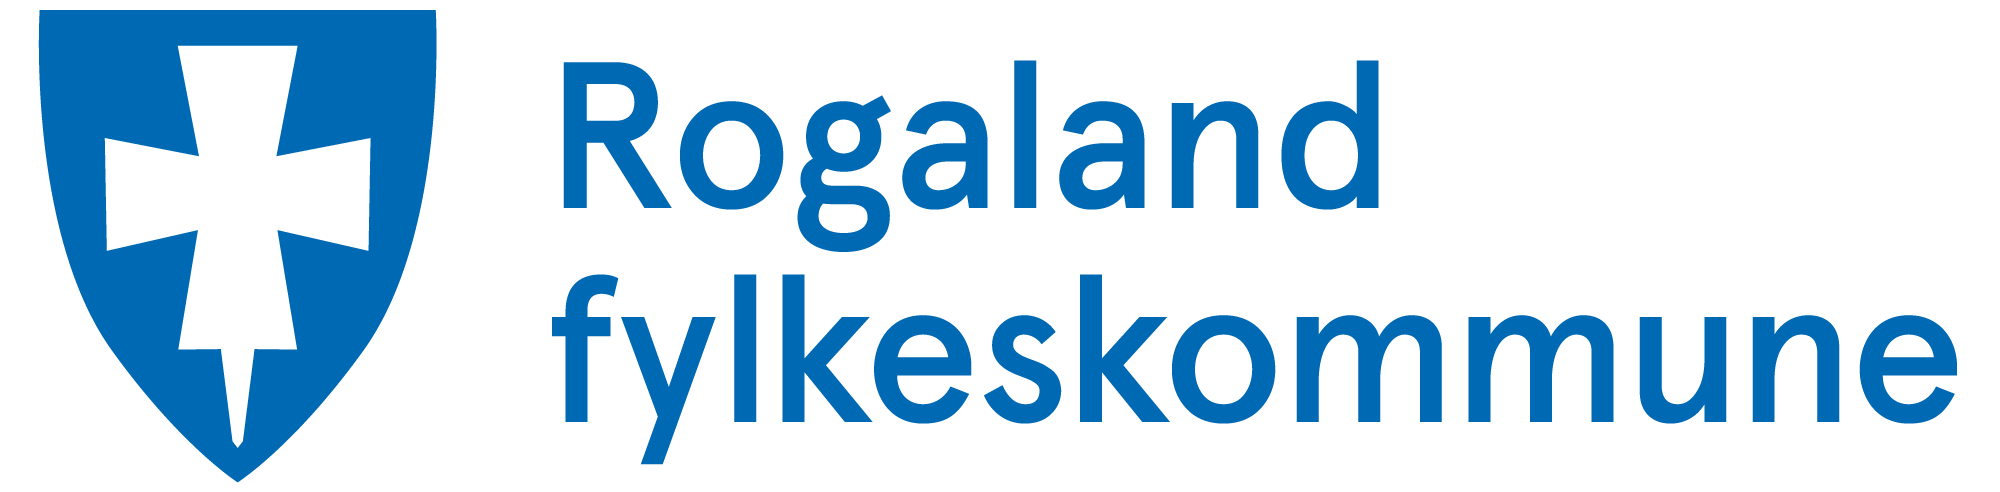 logo-rogaland-fylkeskommune-plan-og-eiendom.png